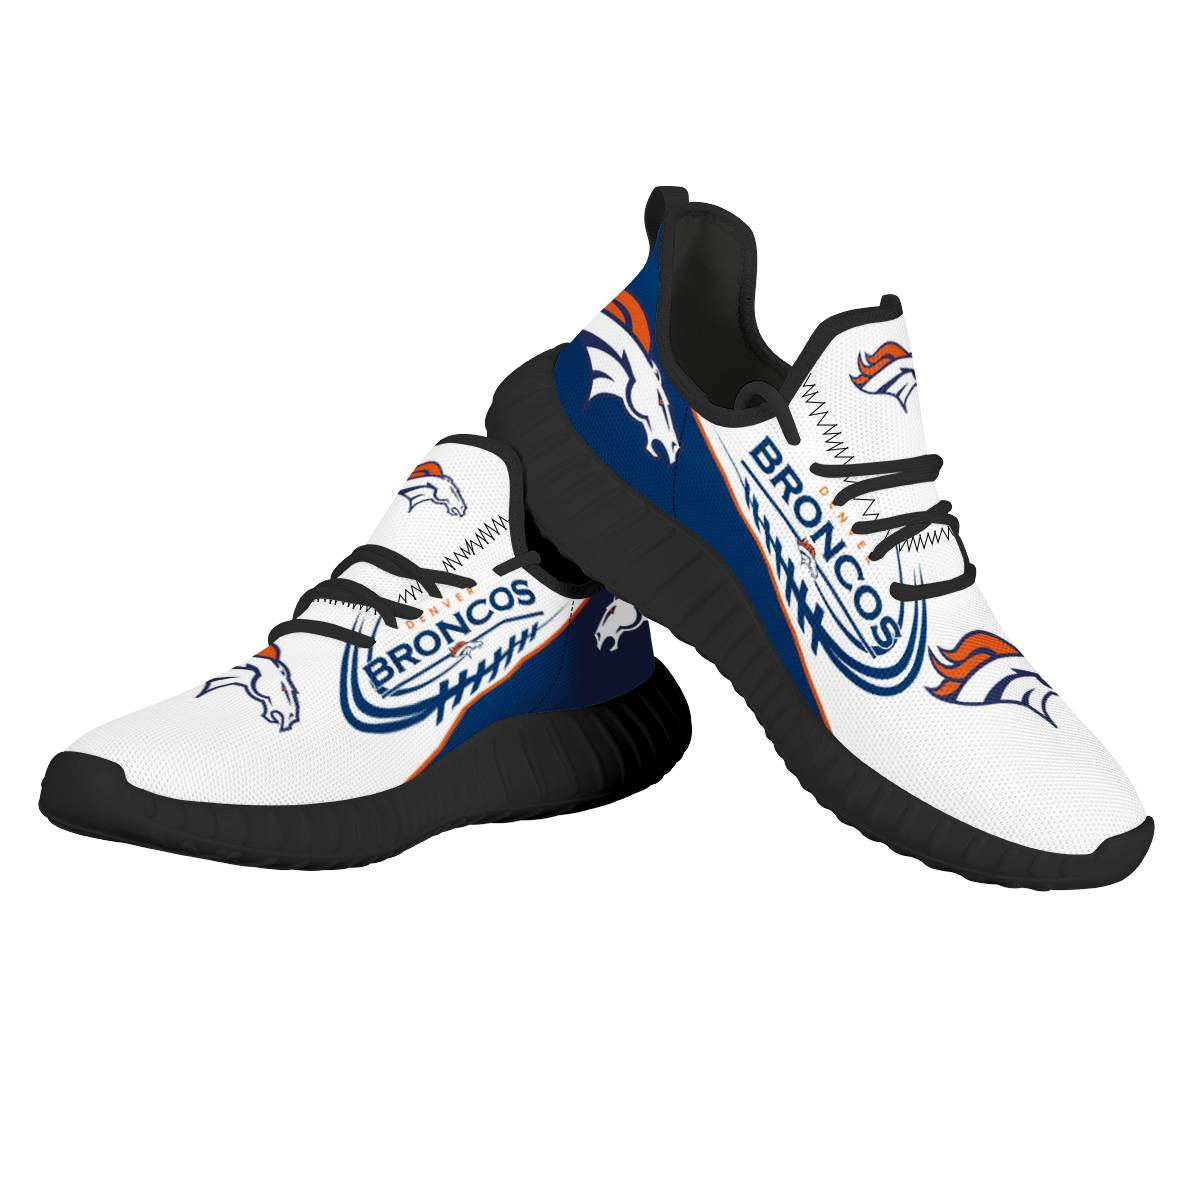 Men's NFL Denver Broncos Mesh Knit Sneakers/Shoes 005